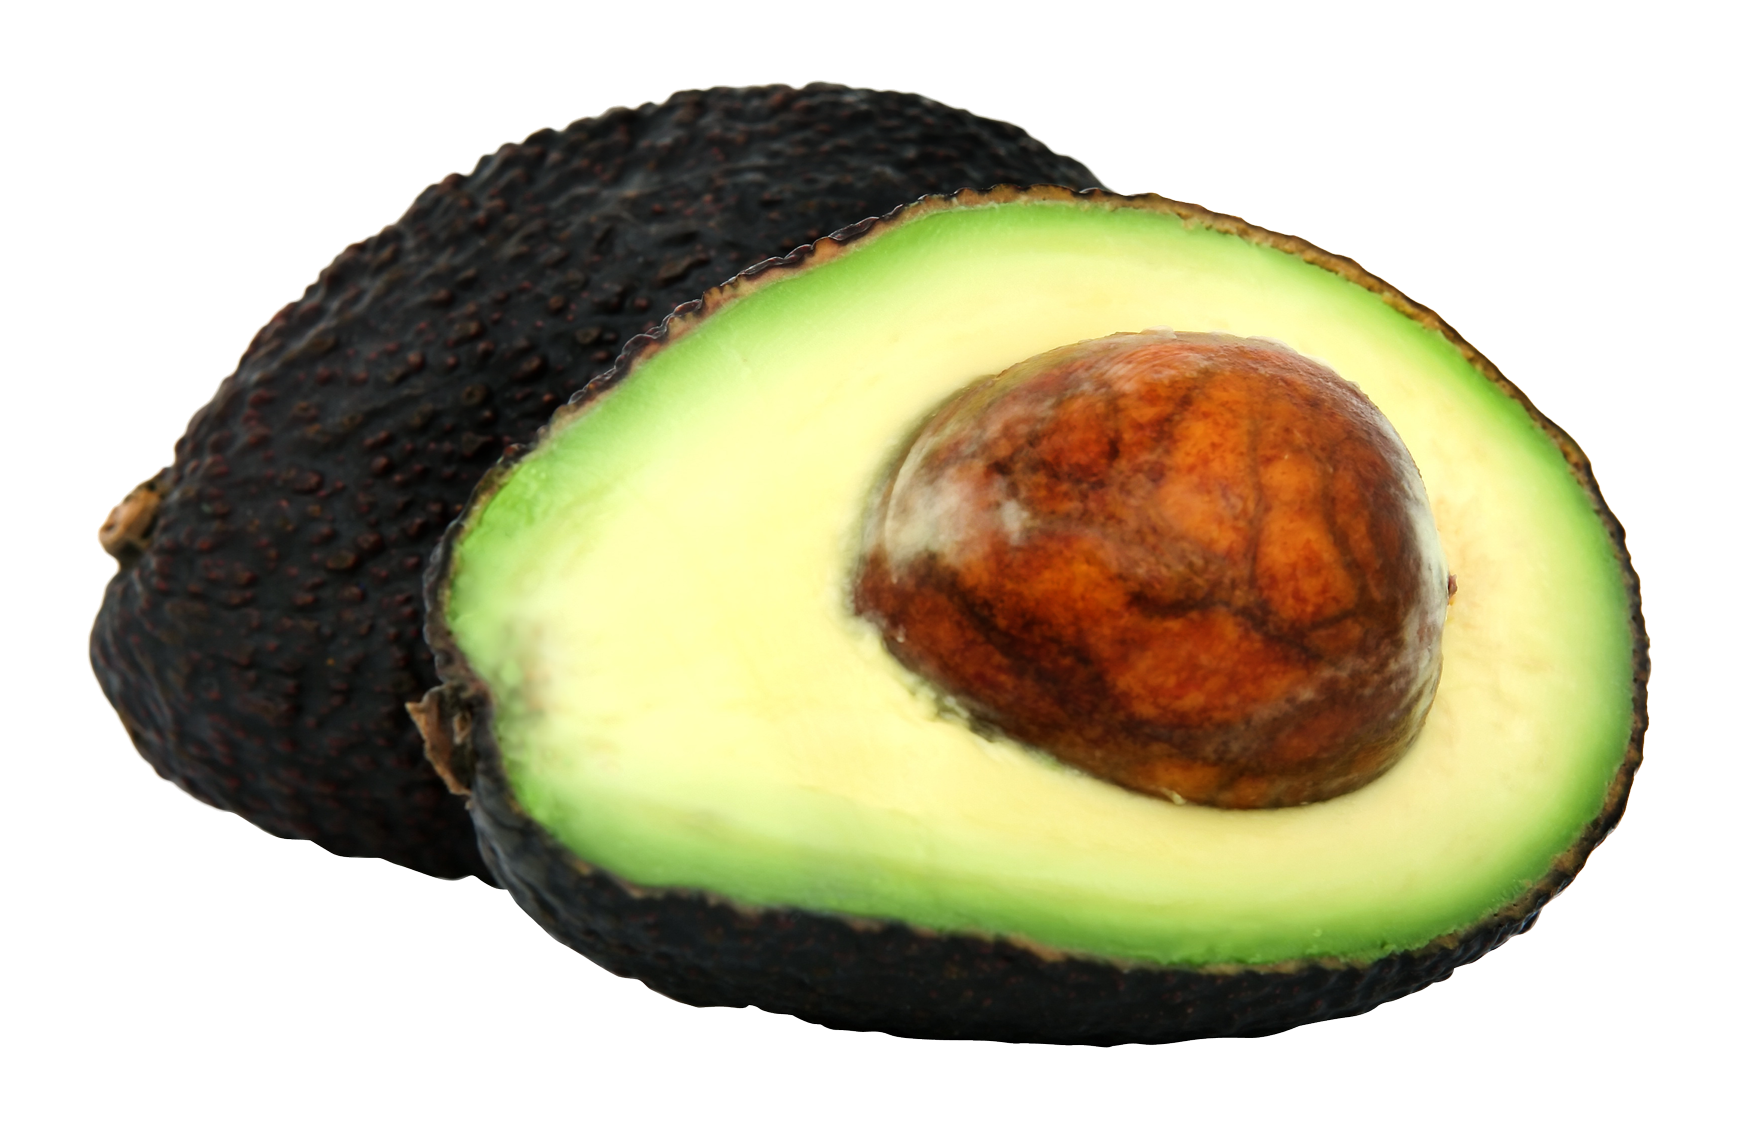 A Close Up Of An Avocado